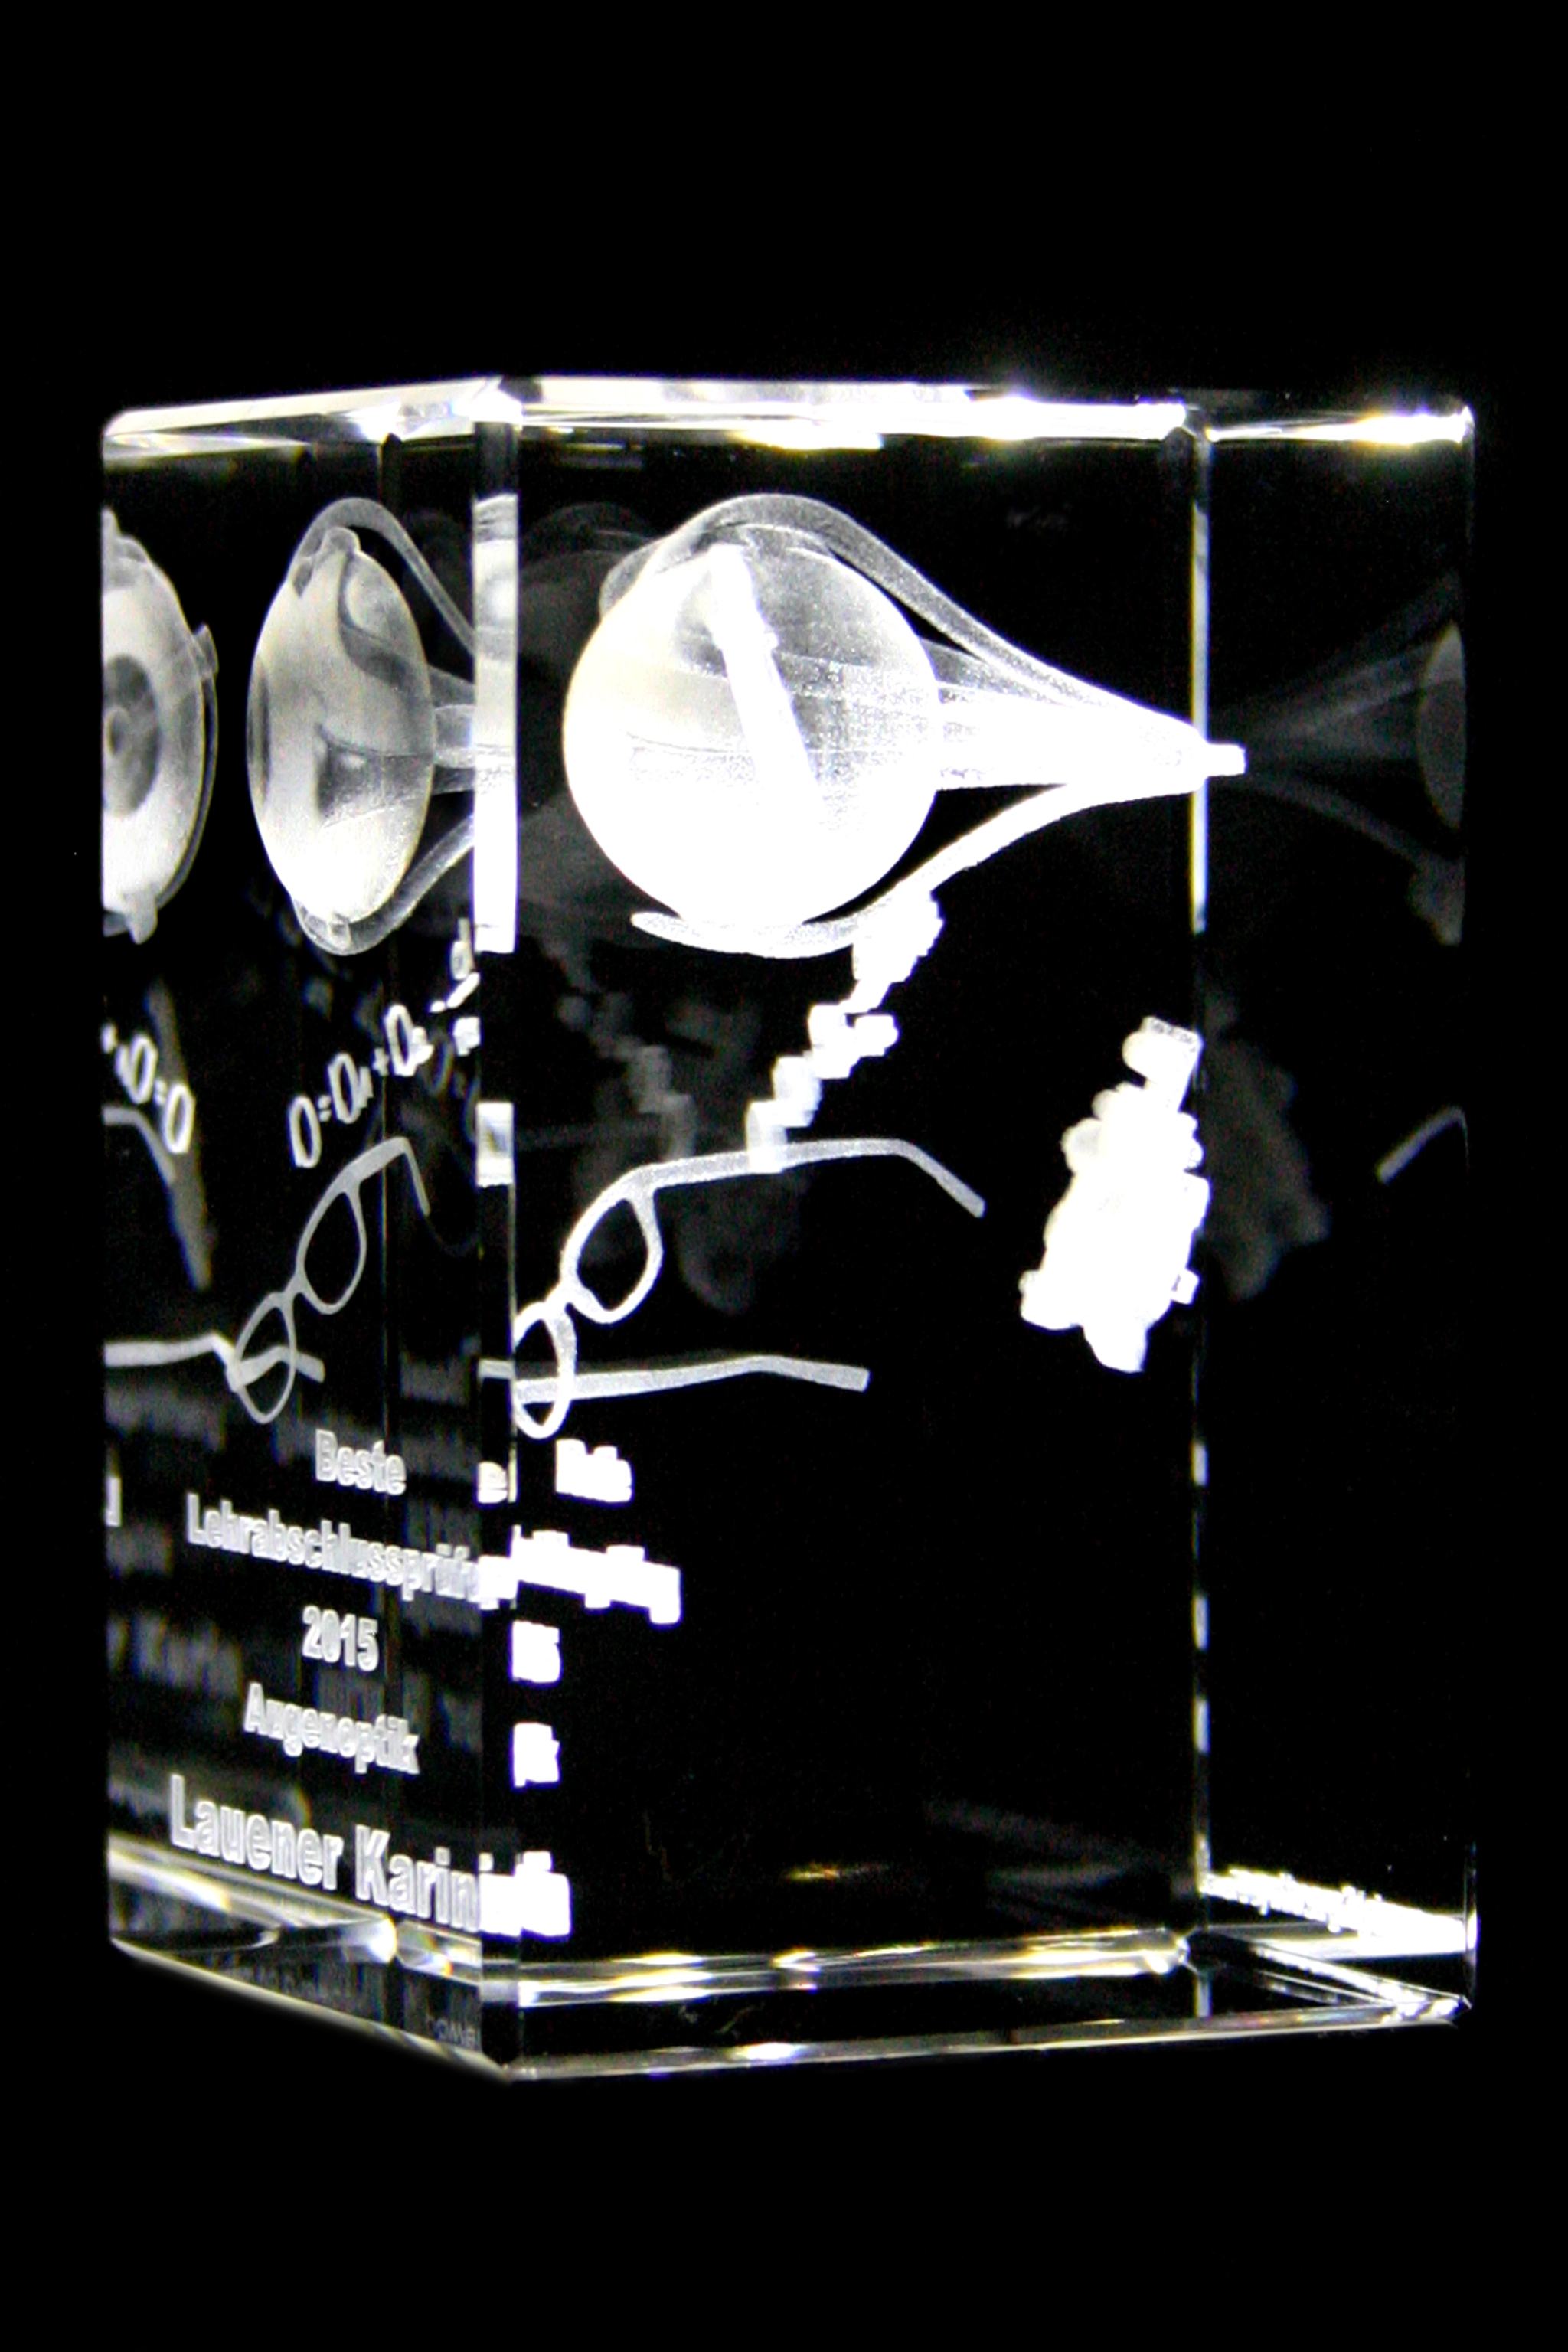 Hemmelighed Tulipaner Foster 3D Personen – Ehrungen aus Glas mit individueller 3D Lasergravur /  individuelle 3D Glas Lasergravuren als Ehrungen Preis / 3D Glas-Lasergravur  als Award, Pokal der Trophäe